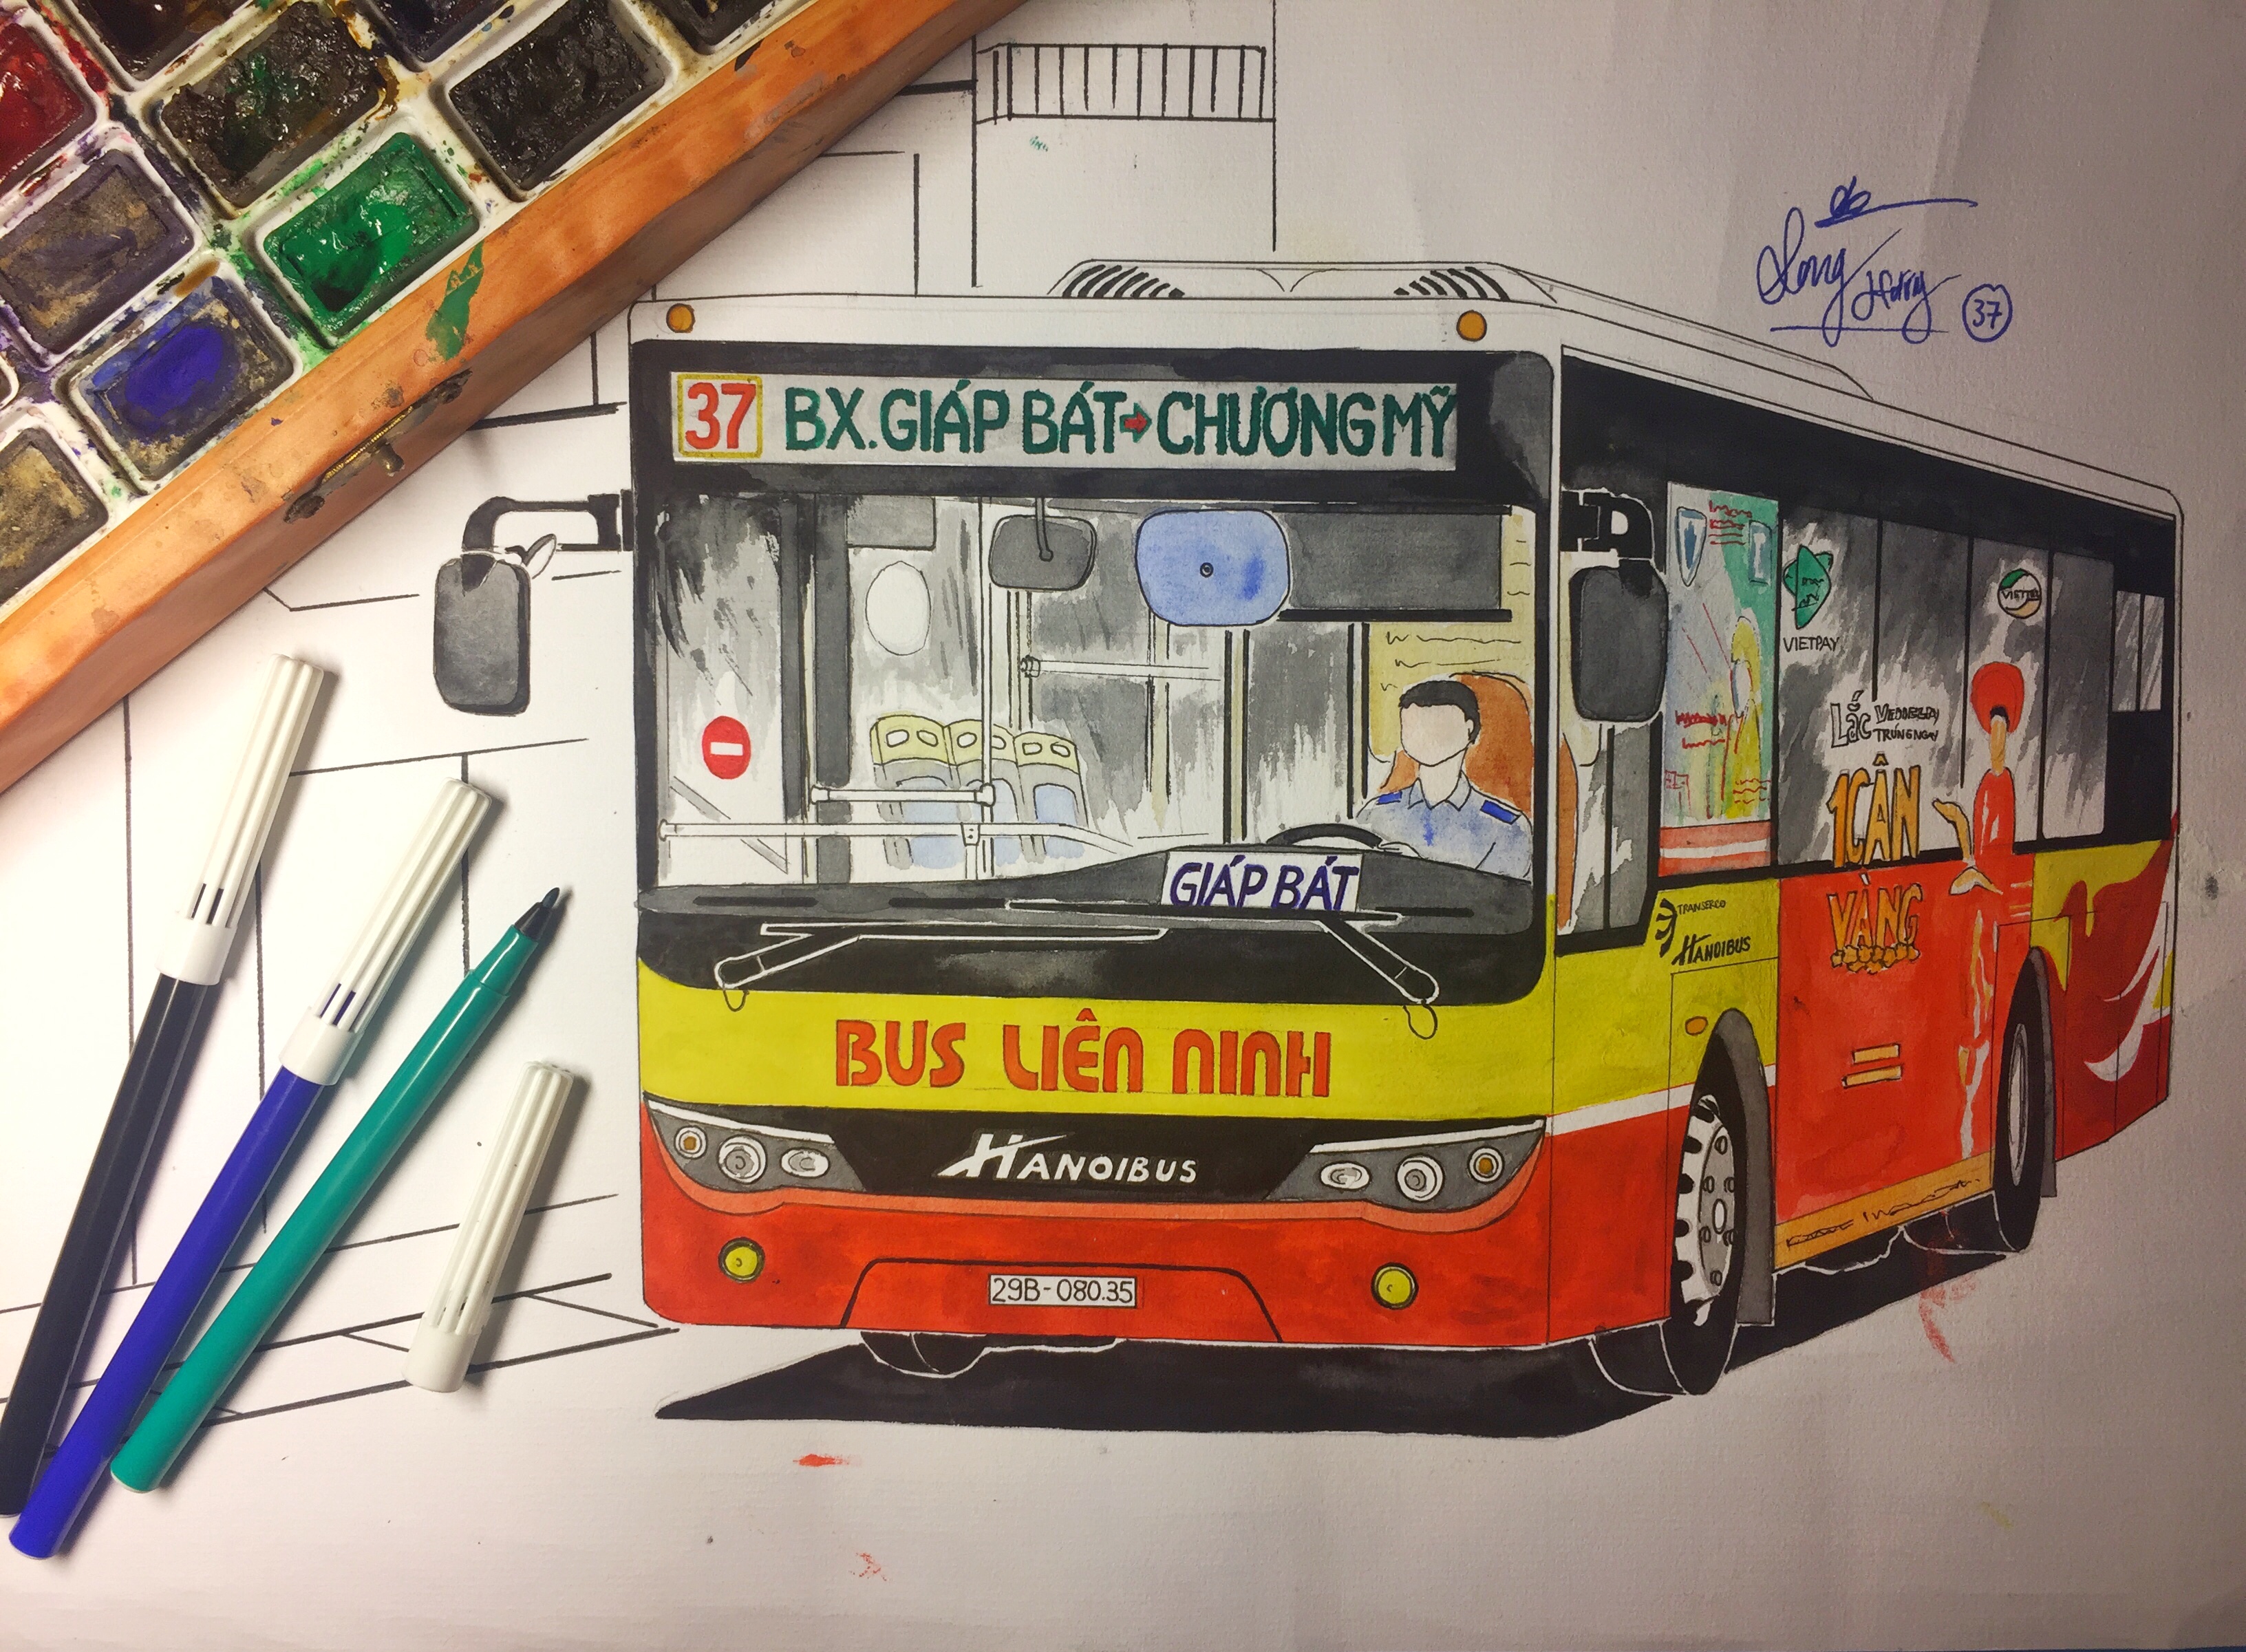 Nếu bạn yêu thích Hà Nội, hình ảnh về tranh vẽ xe buýt Hà Nội sẽ sẽ là một điểm nhấn cho cuộc sống đầy lý thú của bạn. Từ những con phố đông đúc, tới những cánh đồng bình dị, tranh vẽ xe buýt sẽ mang lại cho bạn một cái nhìn độc đáo và đẹp về thủ đô Việt Nam.